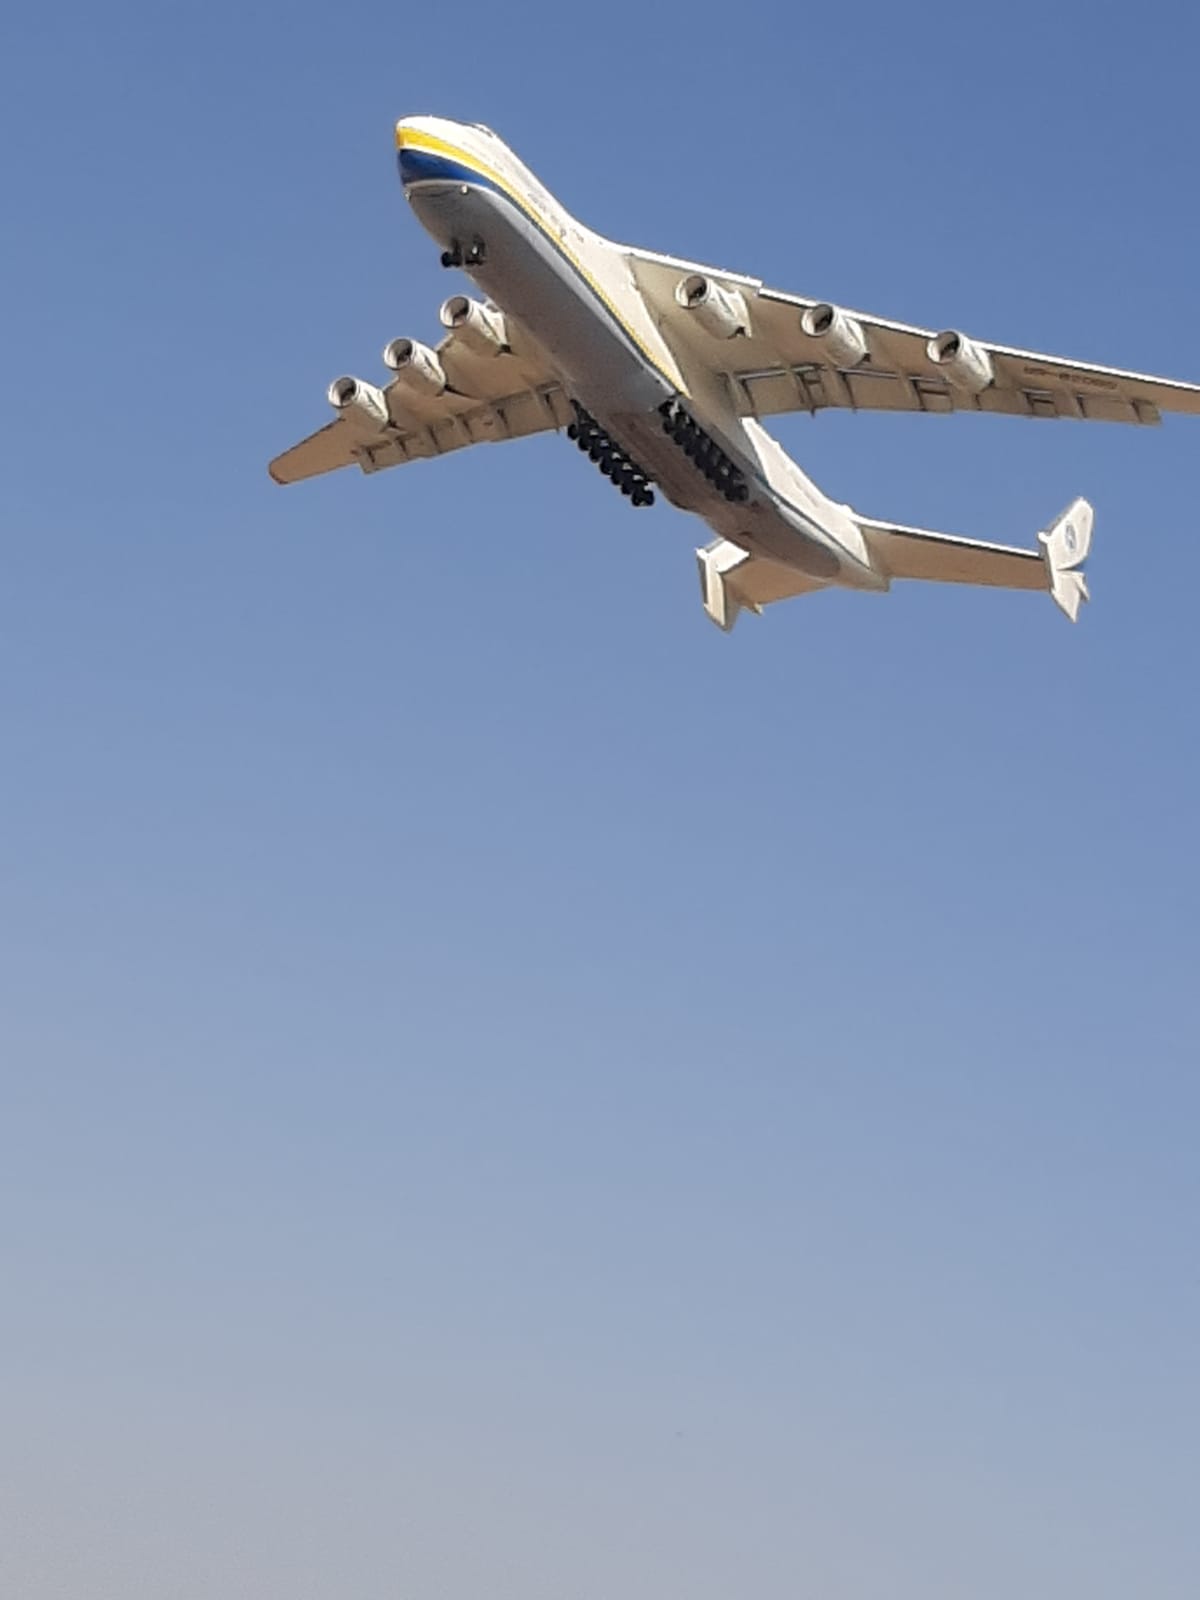  فيديو: أضخم طائرة بالعالم تهبط في مطار اللد 